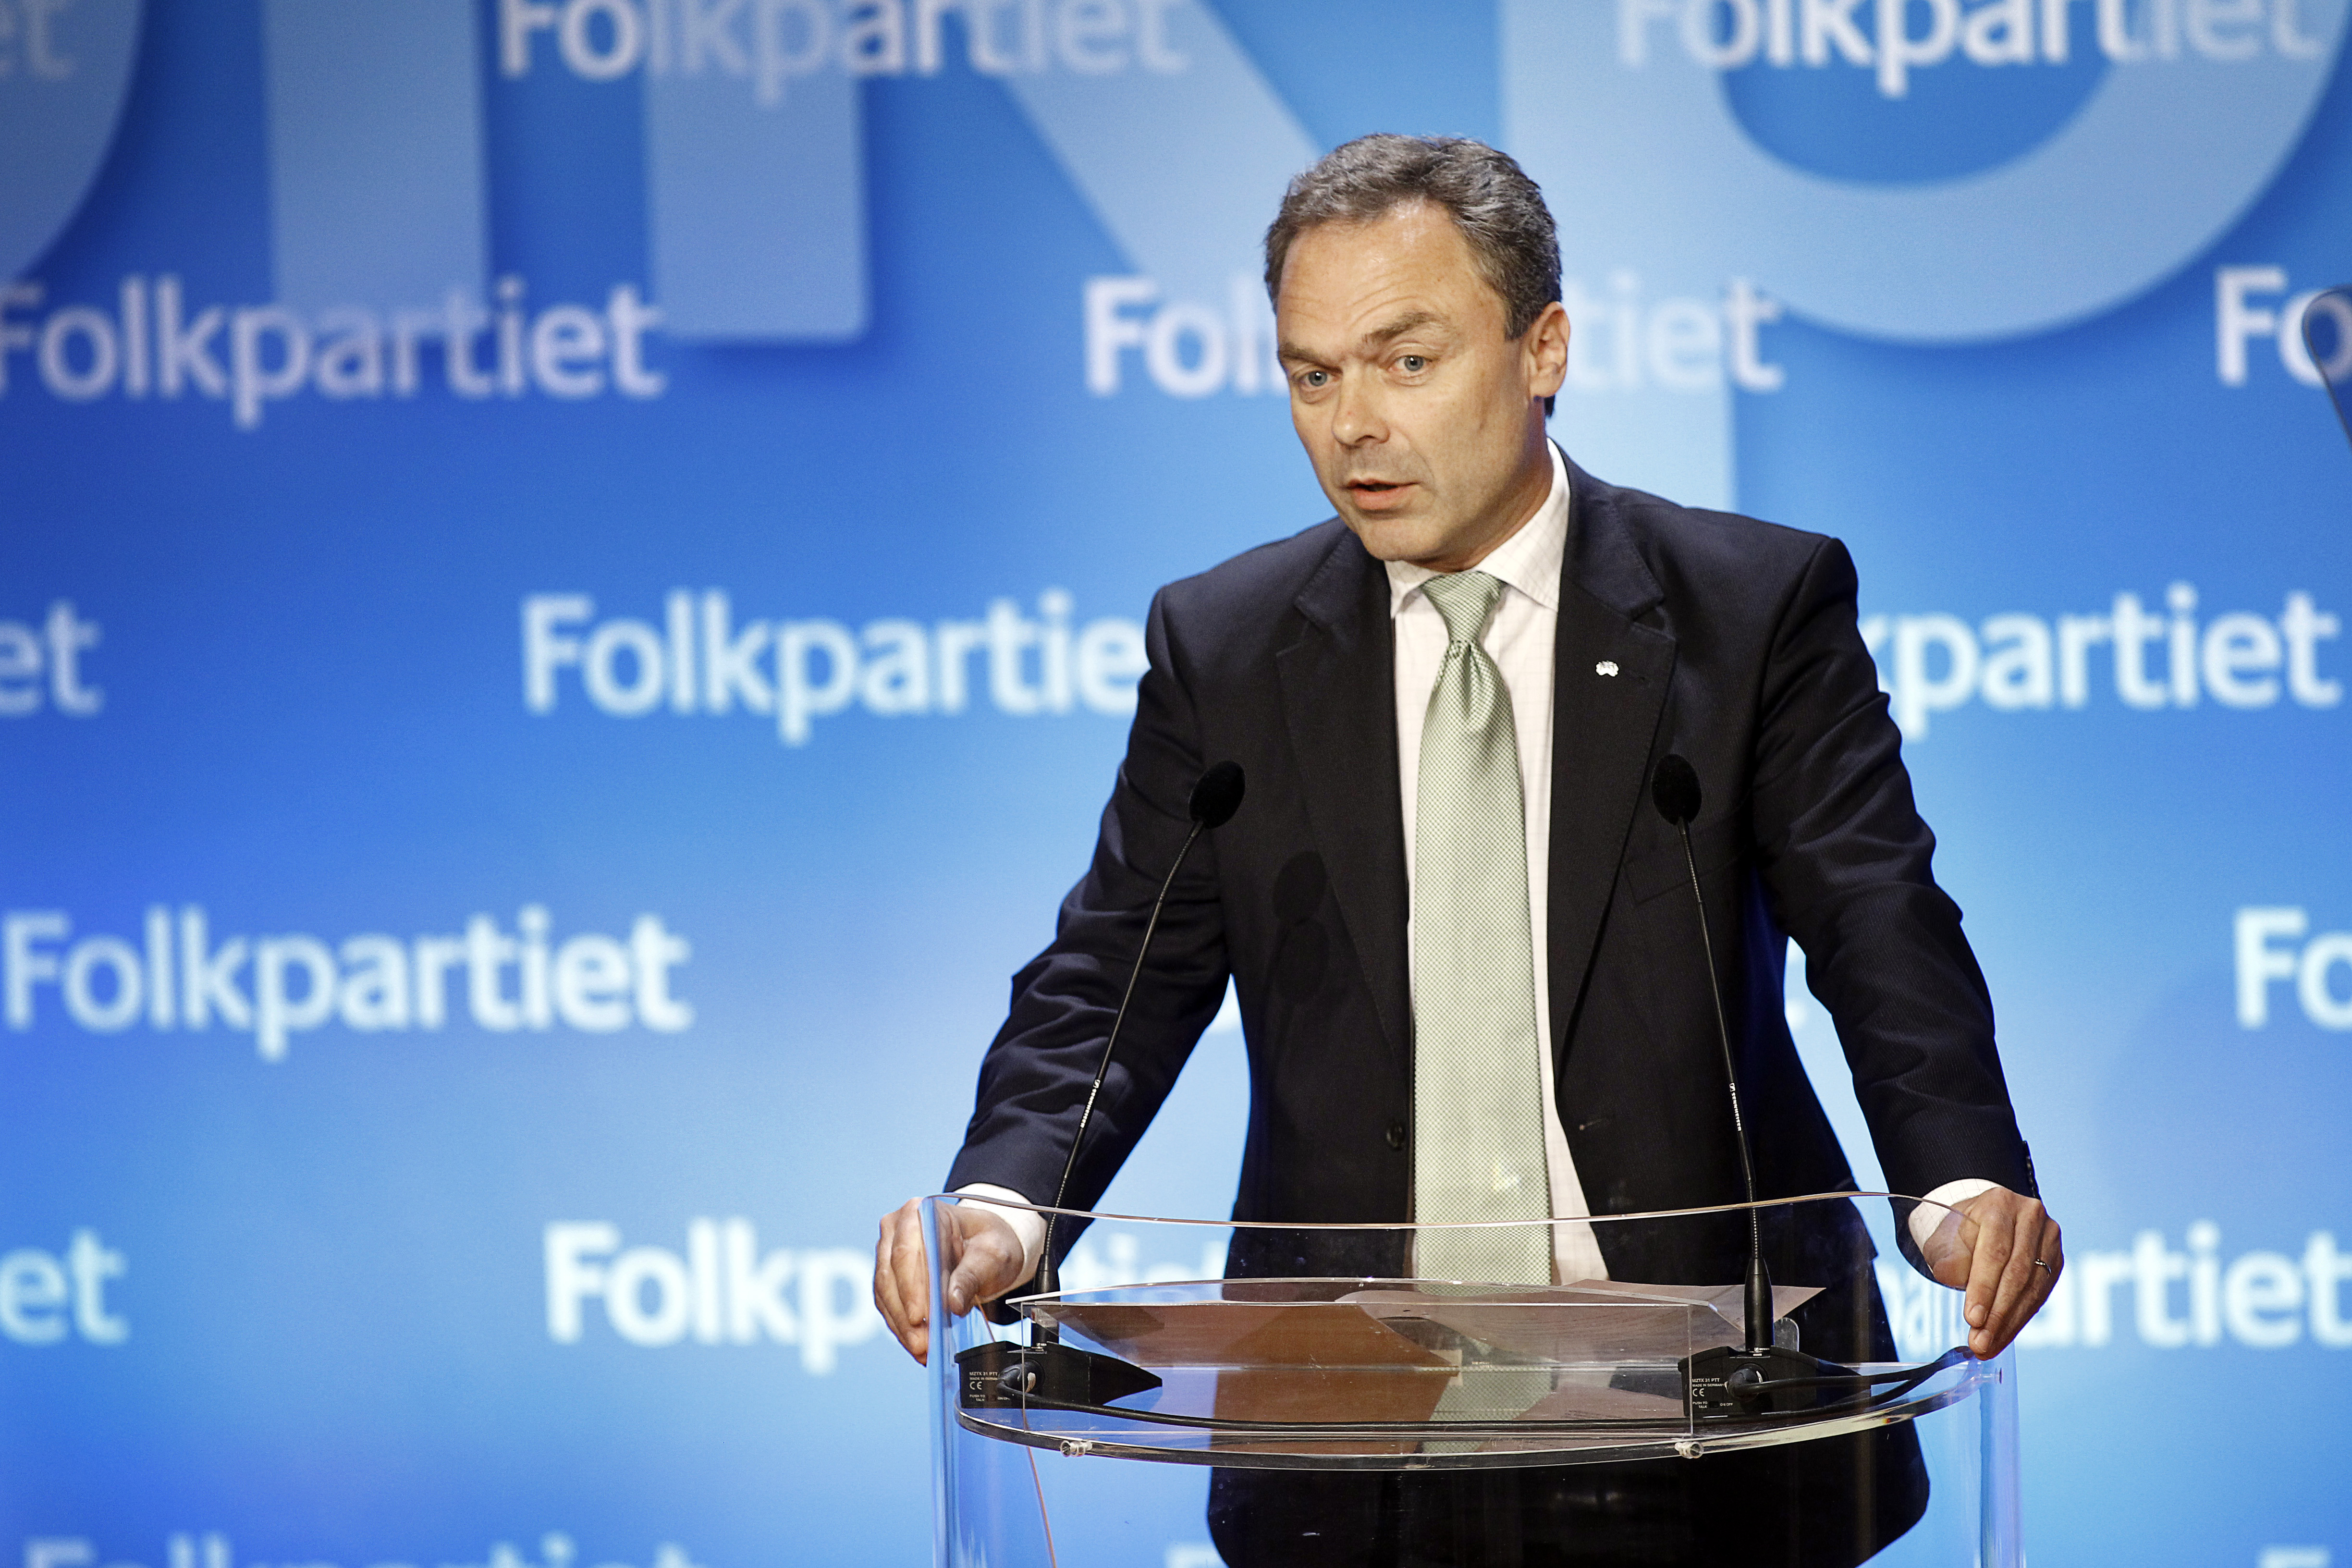 Alliansen, Liberalerna, Jan Björklund, Regeringen, Politik, Riksdagsvalet 2010